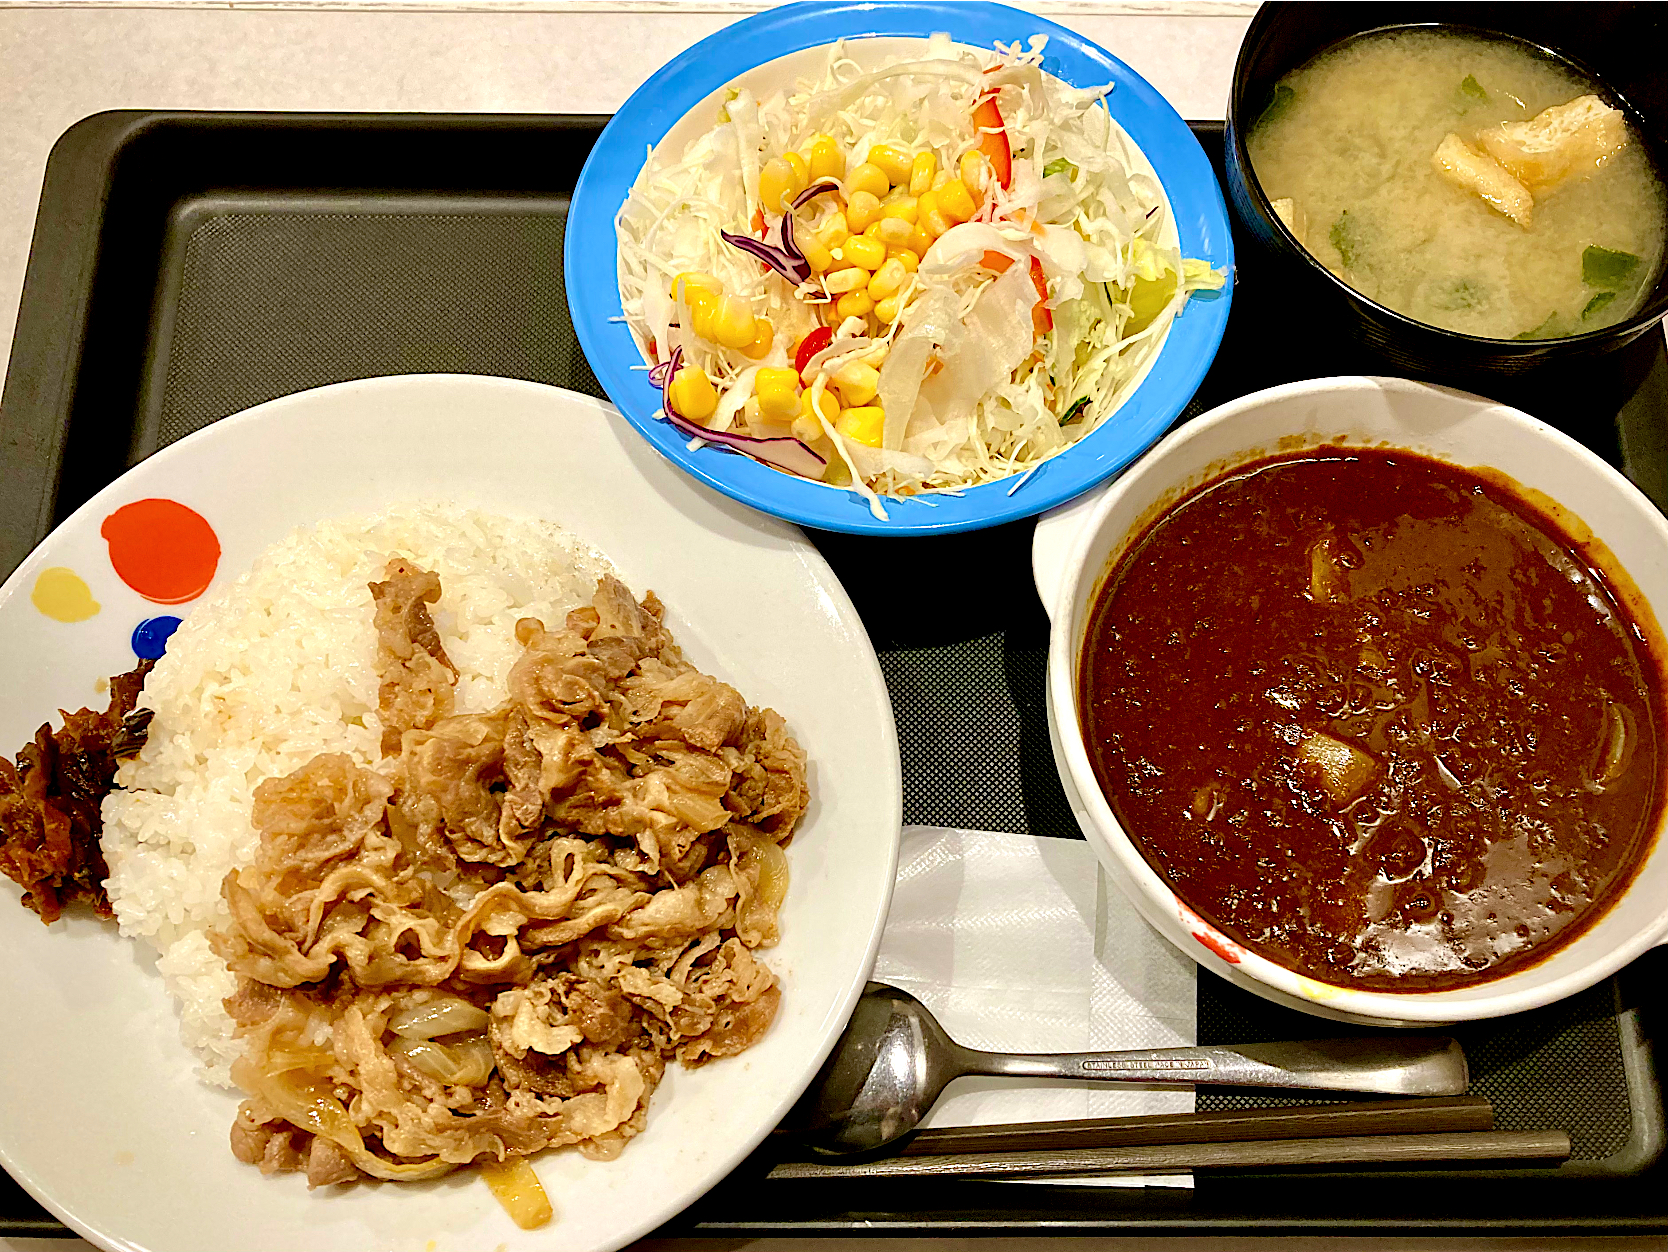 松屋の 牛丼＋カレー❓                          (ｵﾘｼﾞﾅﾙｶﾚｷﾞｭｳ・野菜ｻﾗﾀﾞ)